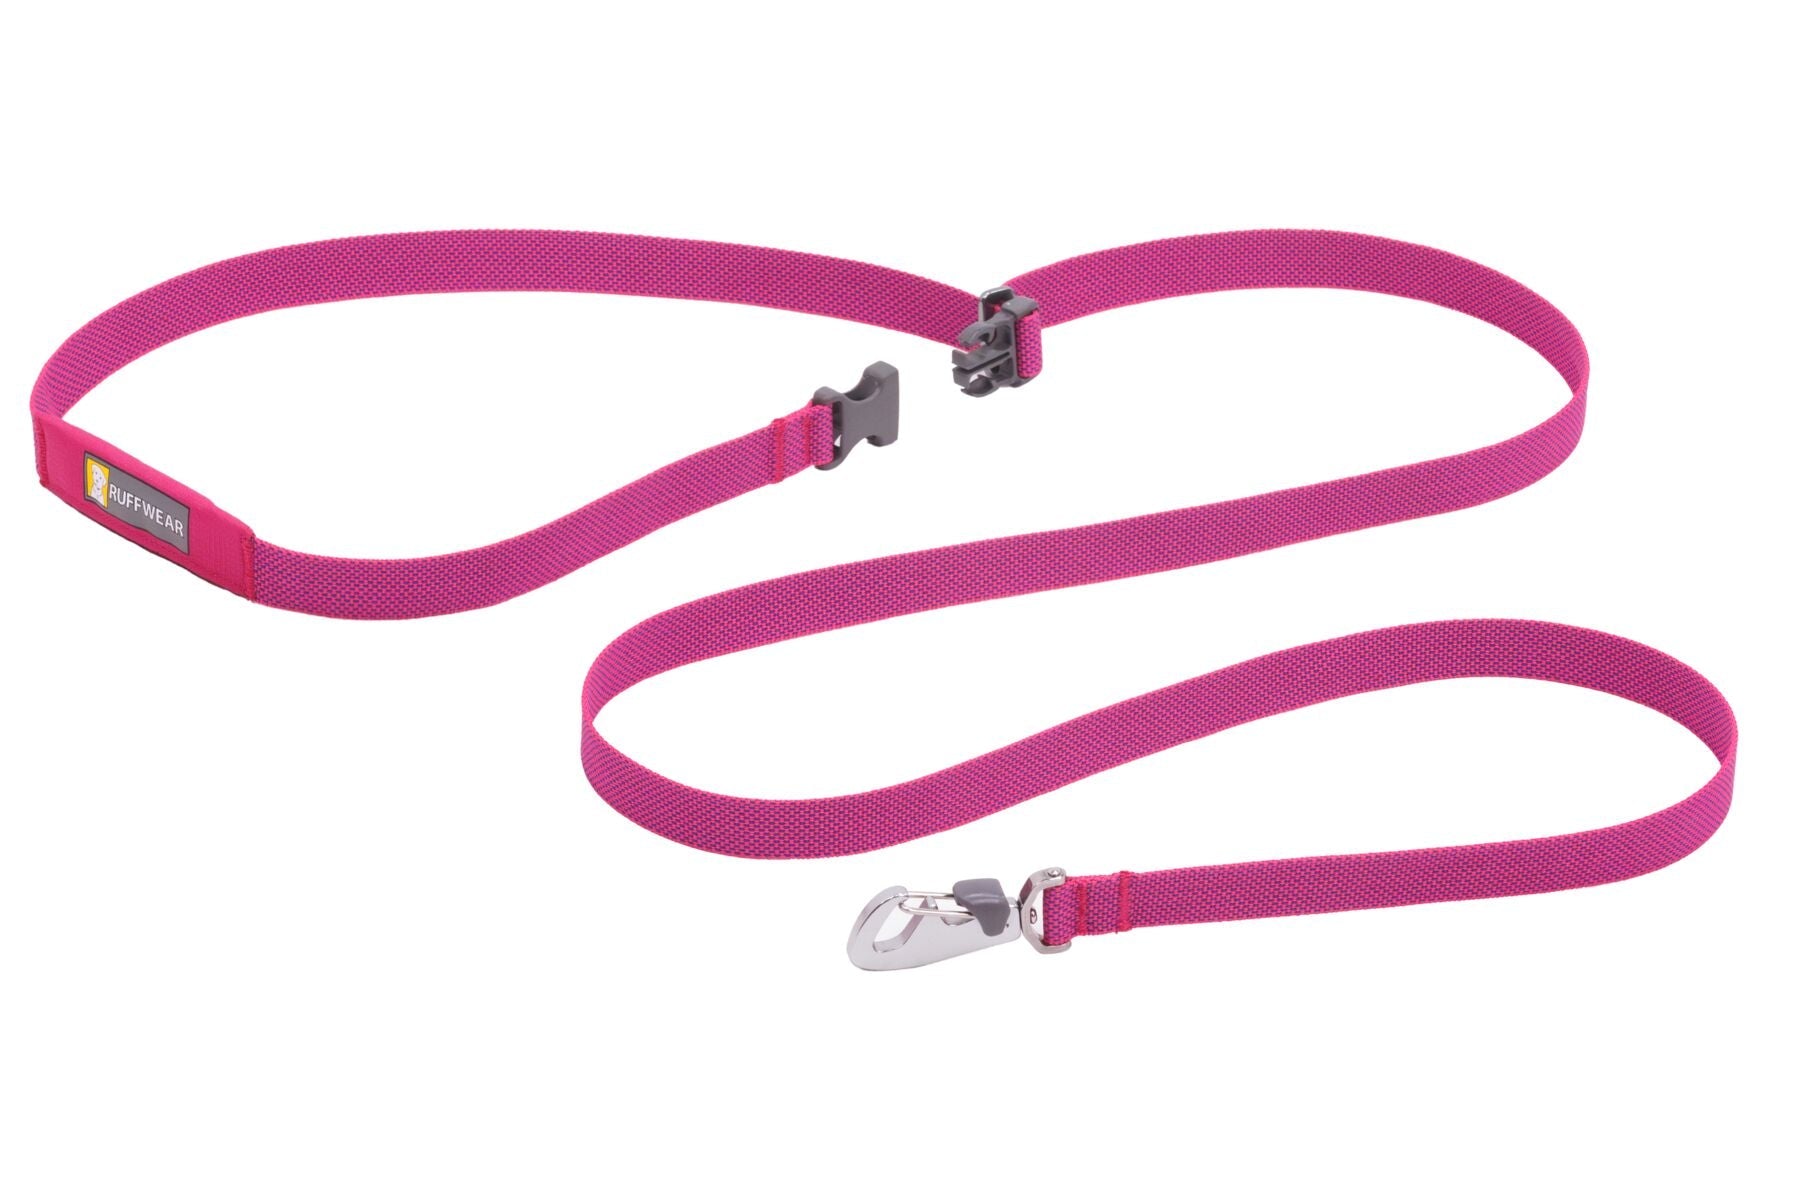 Flagline® Correa Multi-usos en Rosa Alpino (Alpenglow Pink) de Ruffwear